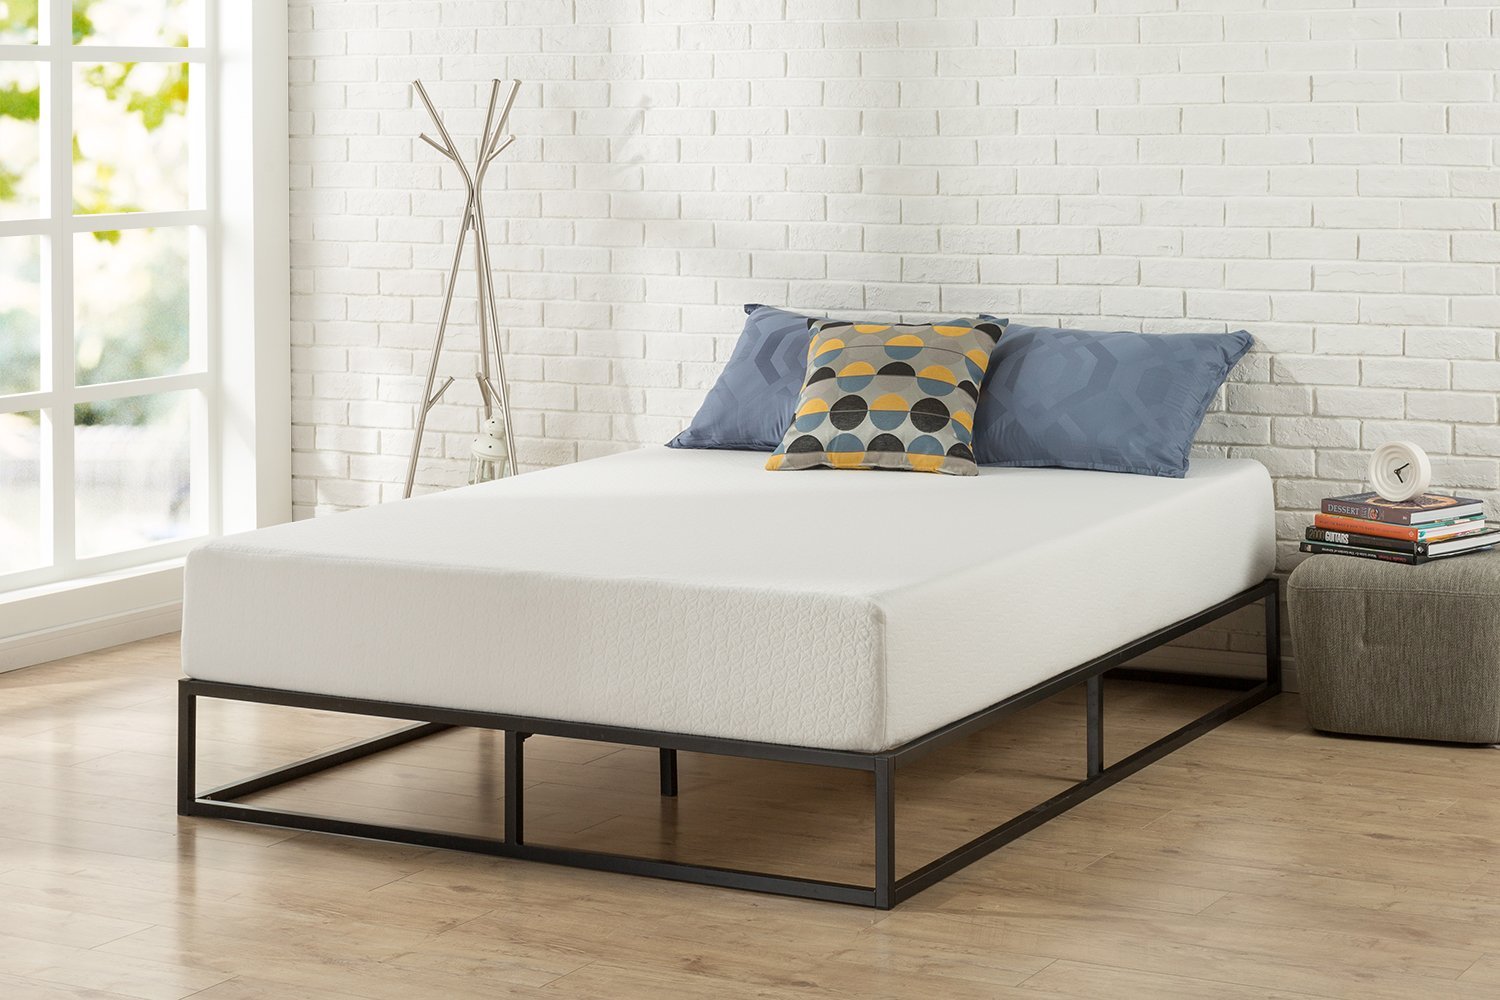 Zinus Bed Frame - Zinus Joseph 18" Platforma Bed Frame & Mattress Foundation ... / Curtis grey full upholstered platform bed frame: